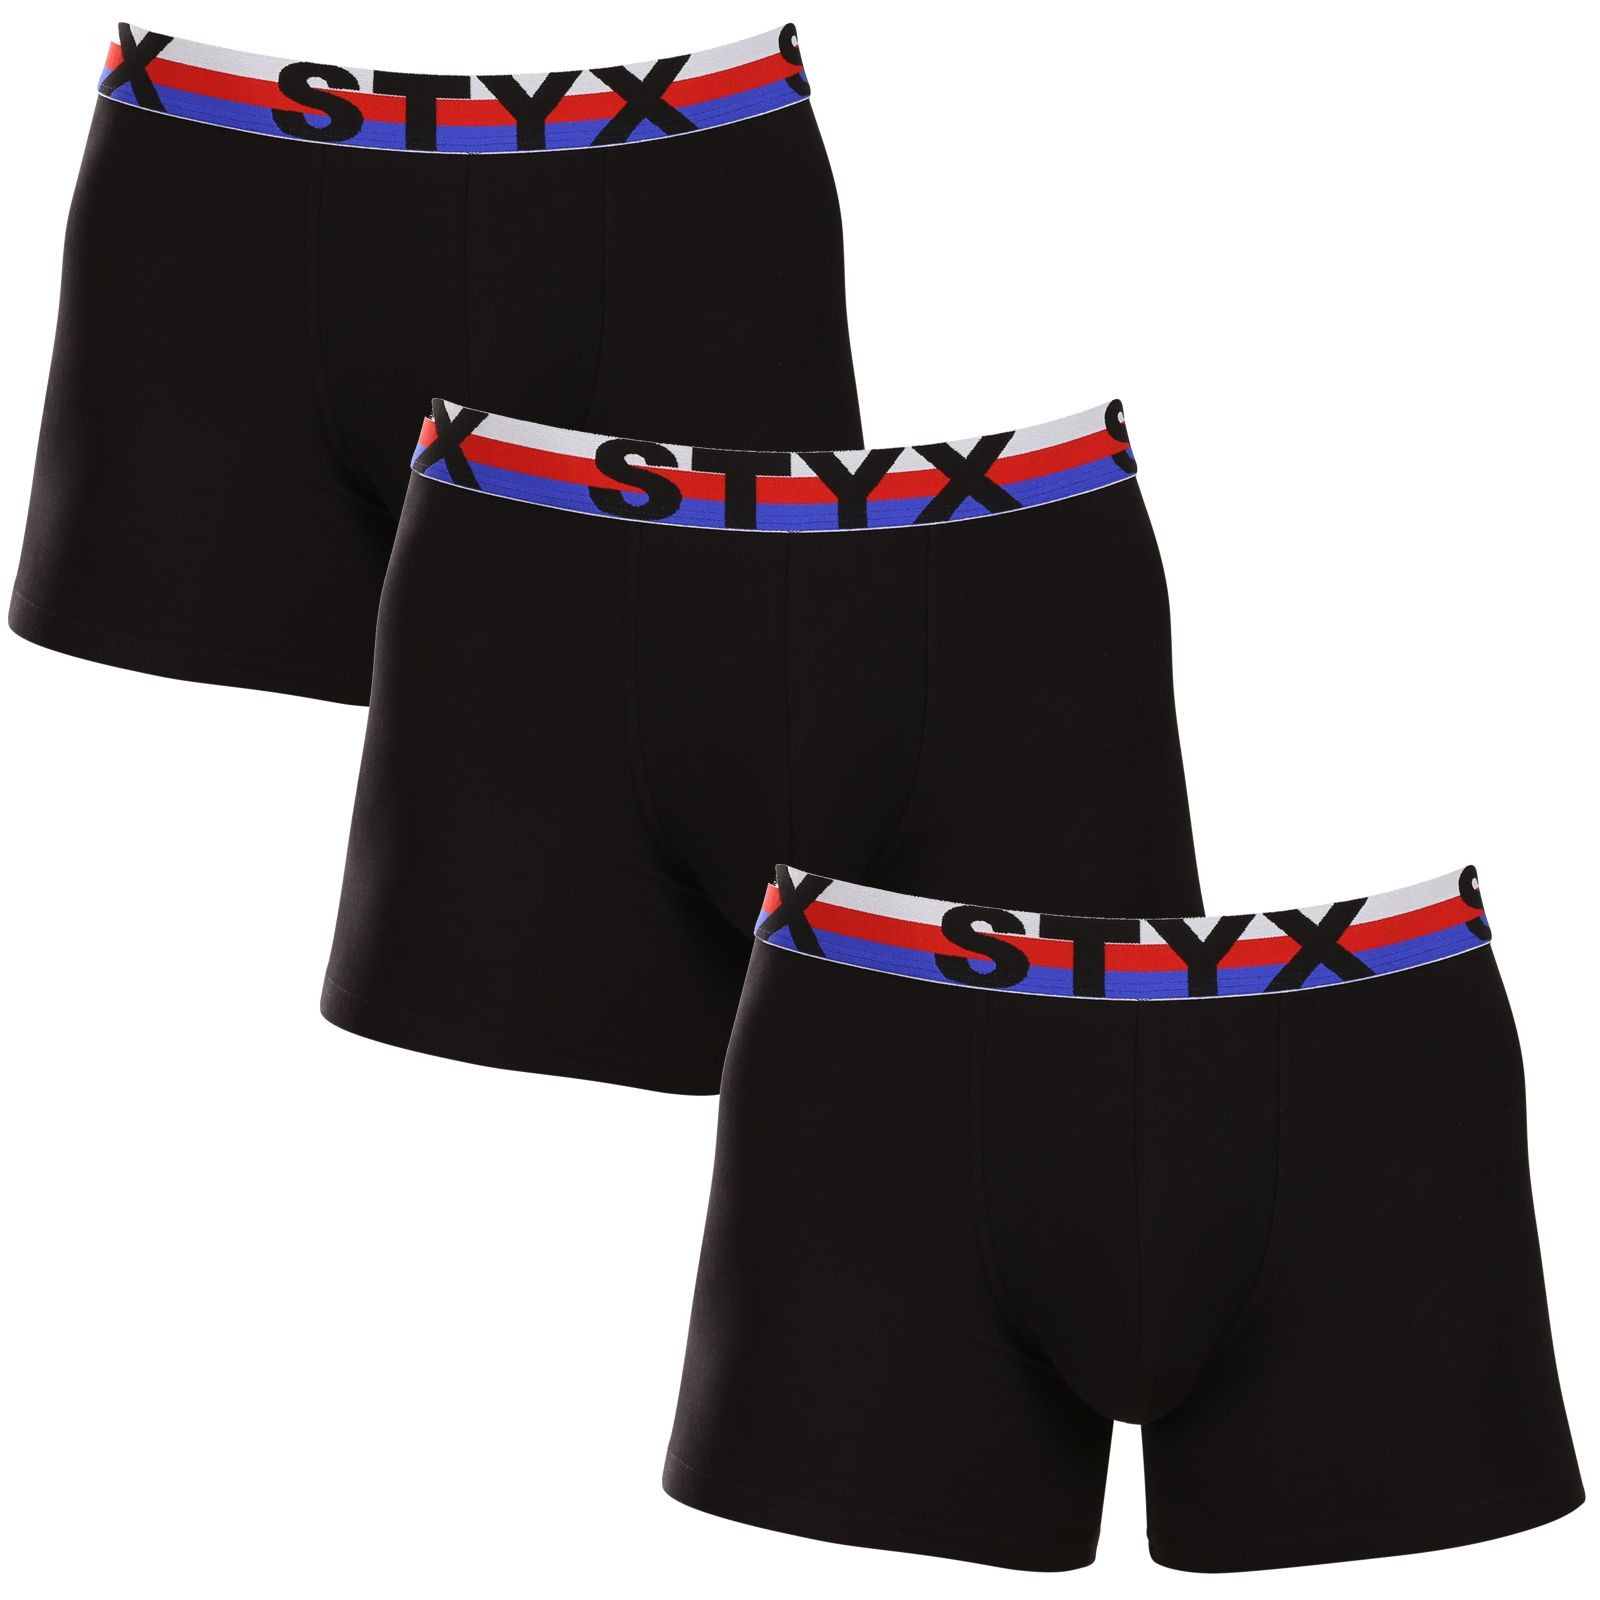 E-shop 3PACK pánské boxerky Styx long sportovní guma černé trikolóra